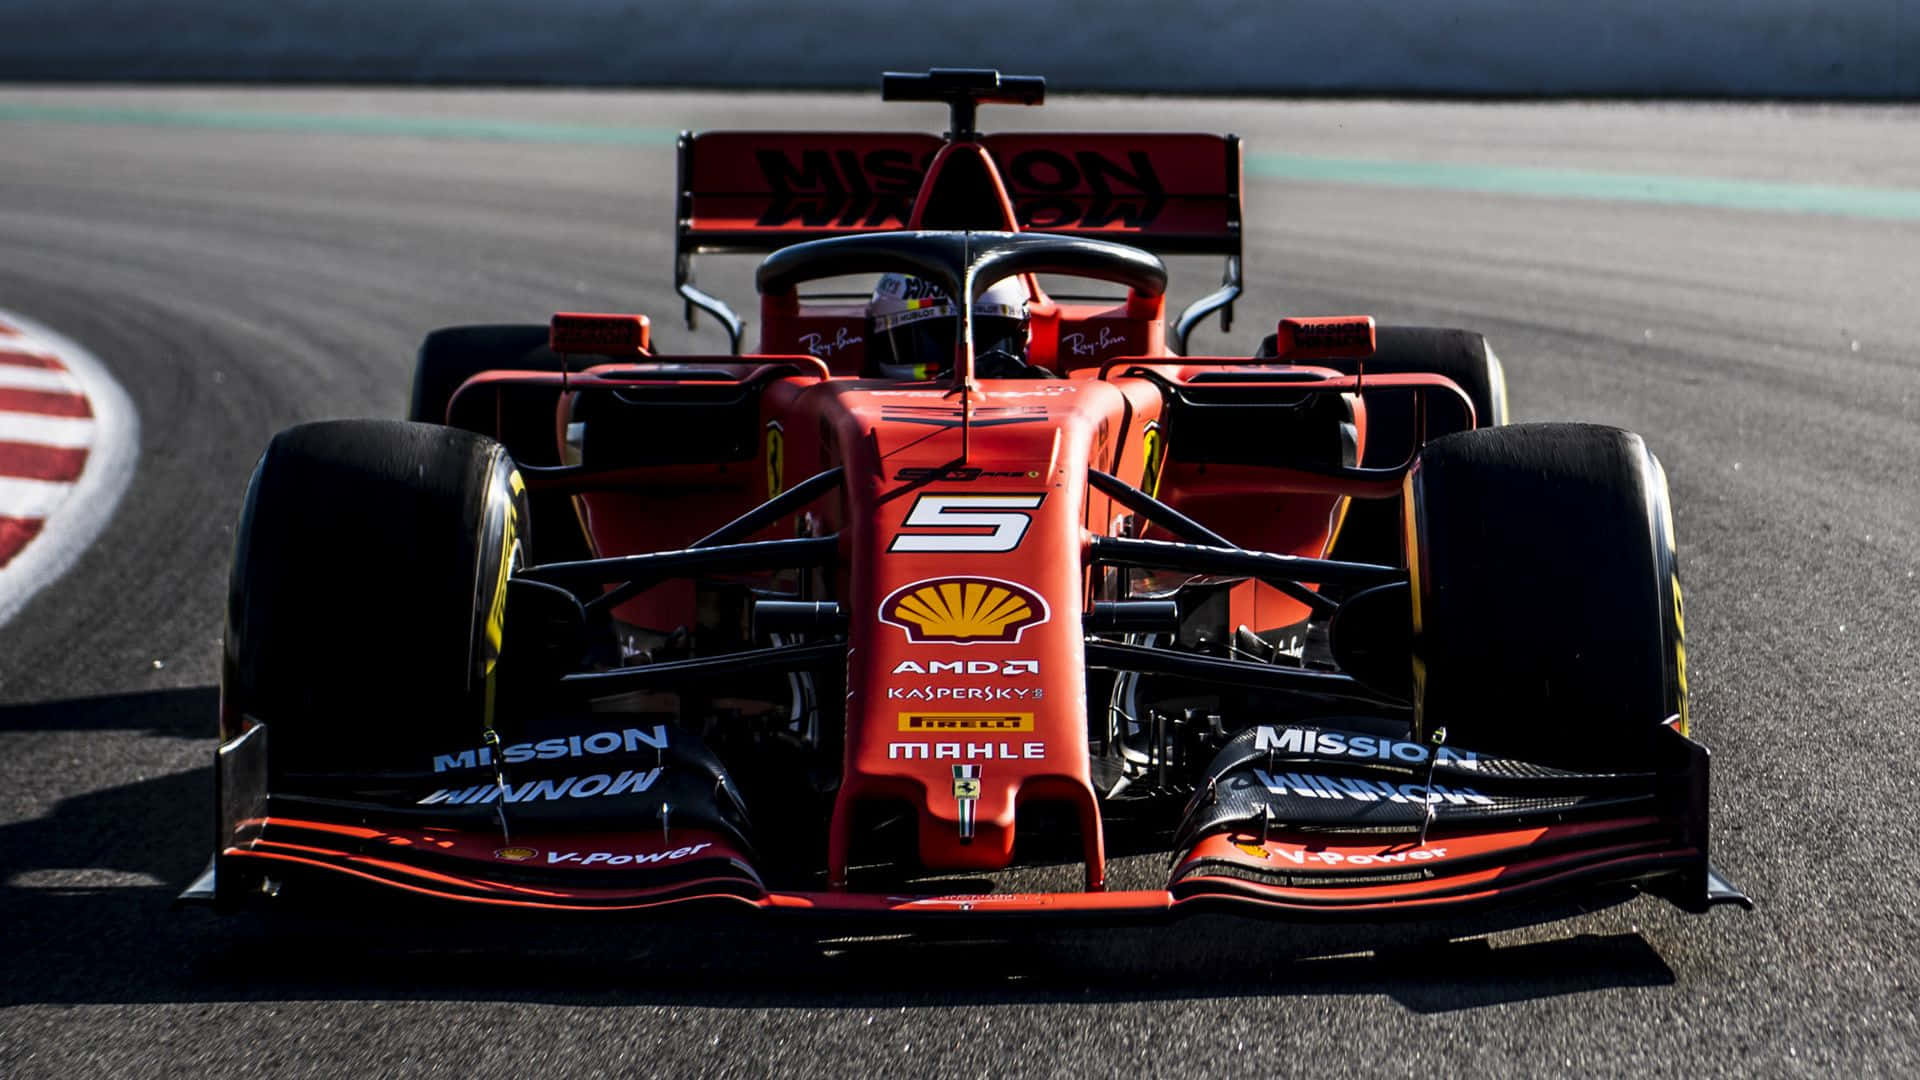 Ferrarif1 2019: Una Maravilla De La Competición. Fondo de pantalla